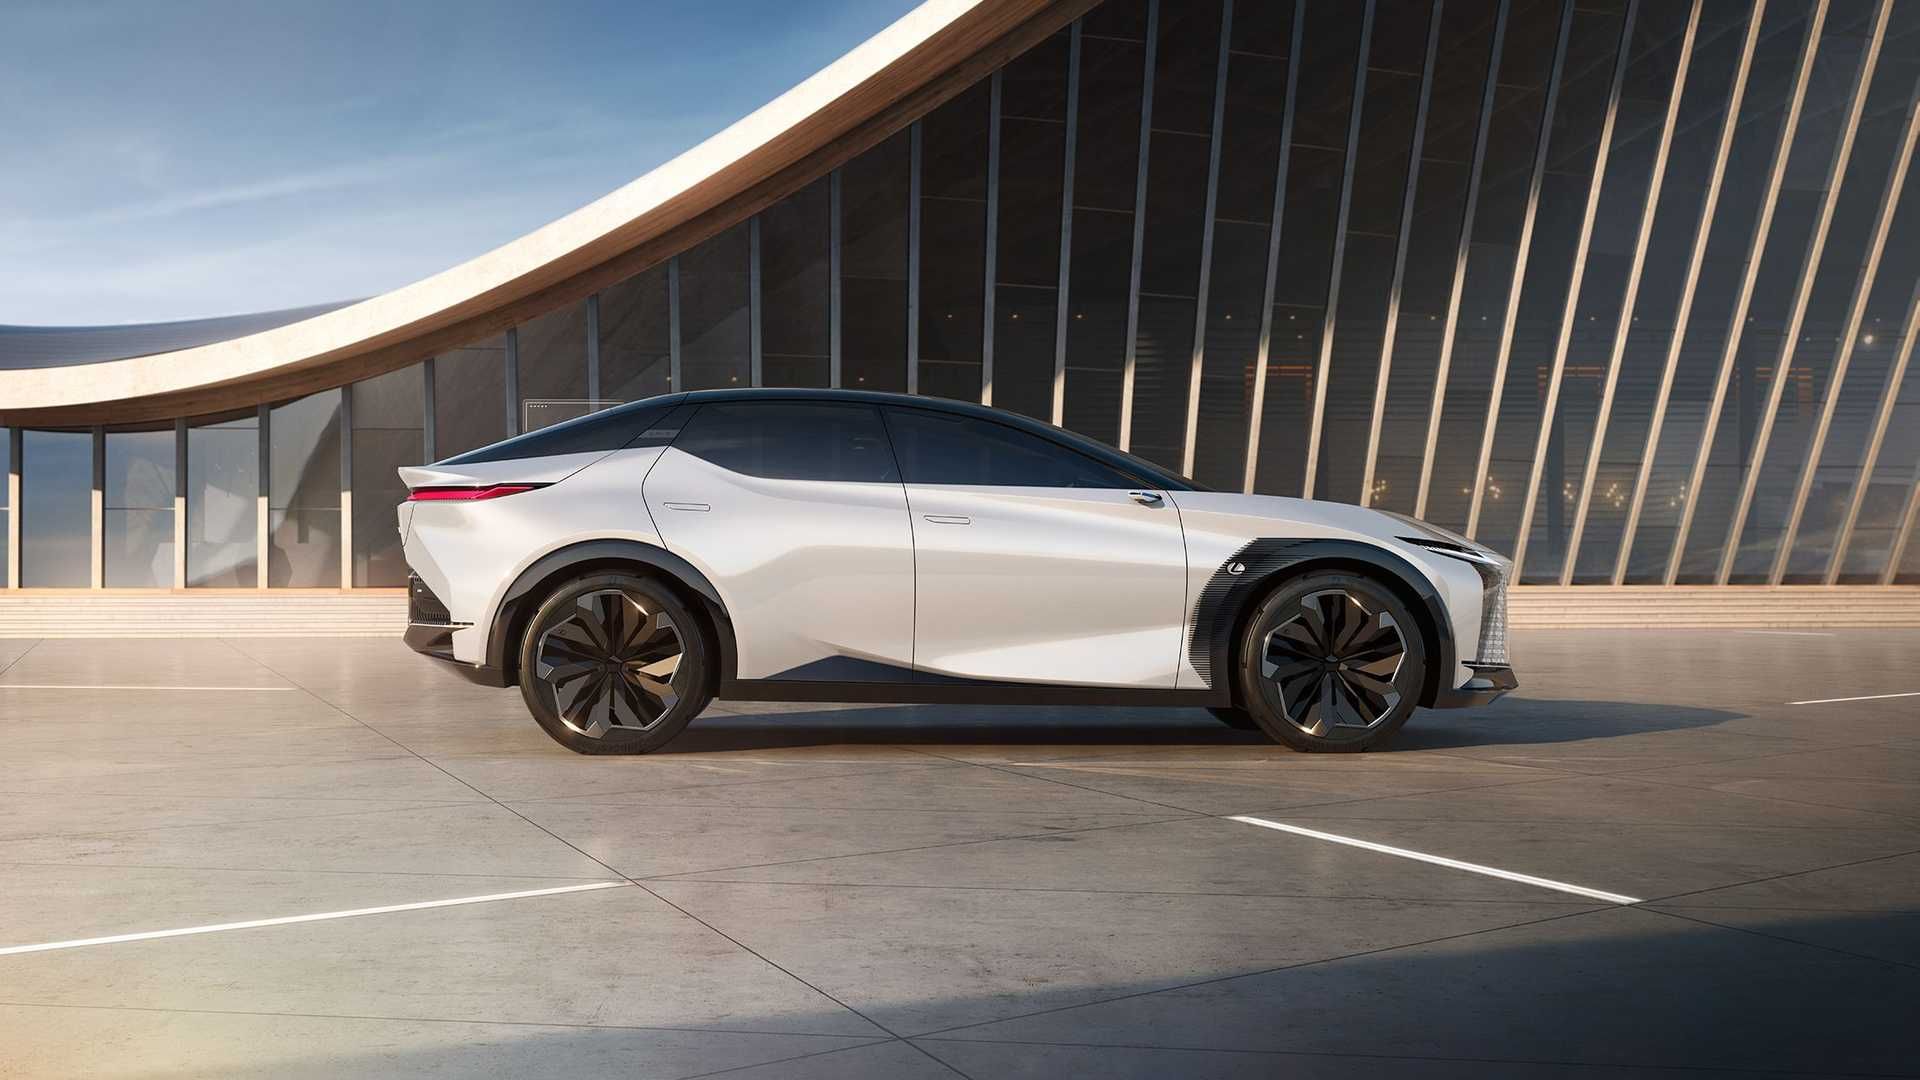 نمای جانبی خودروی مفهومی و برقی لکسوس / Lexus LF-Z Electrified Concept EV سفید رنگ